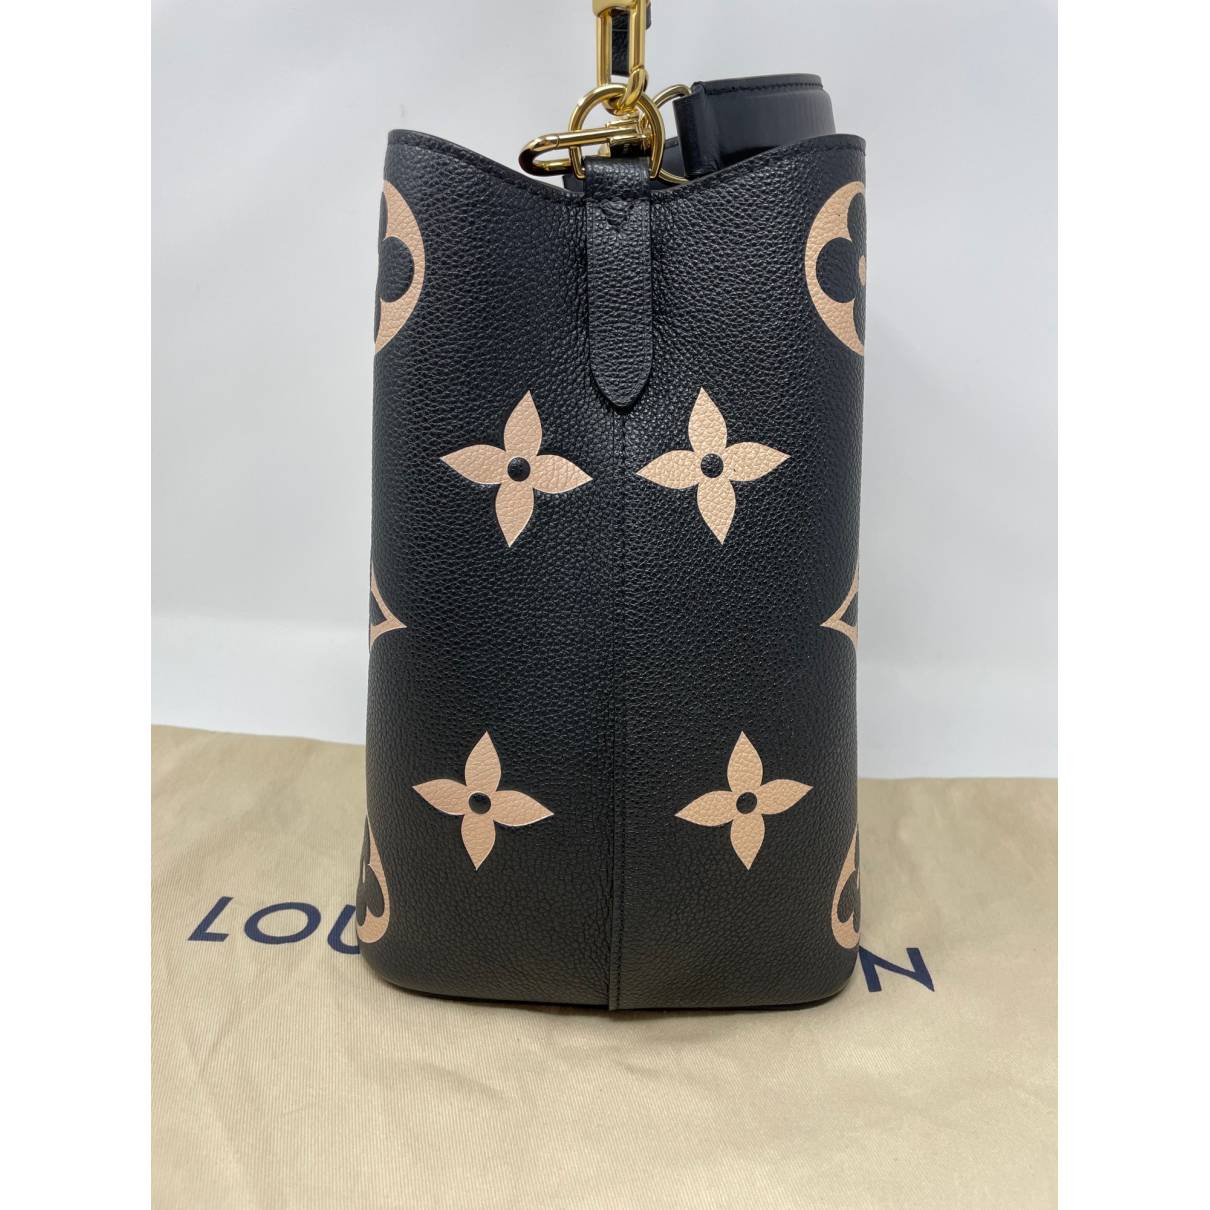 Louis Vuitton - Black Empreinte Boite Chapeau Souple MM Bag